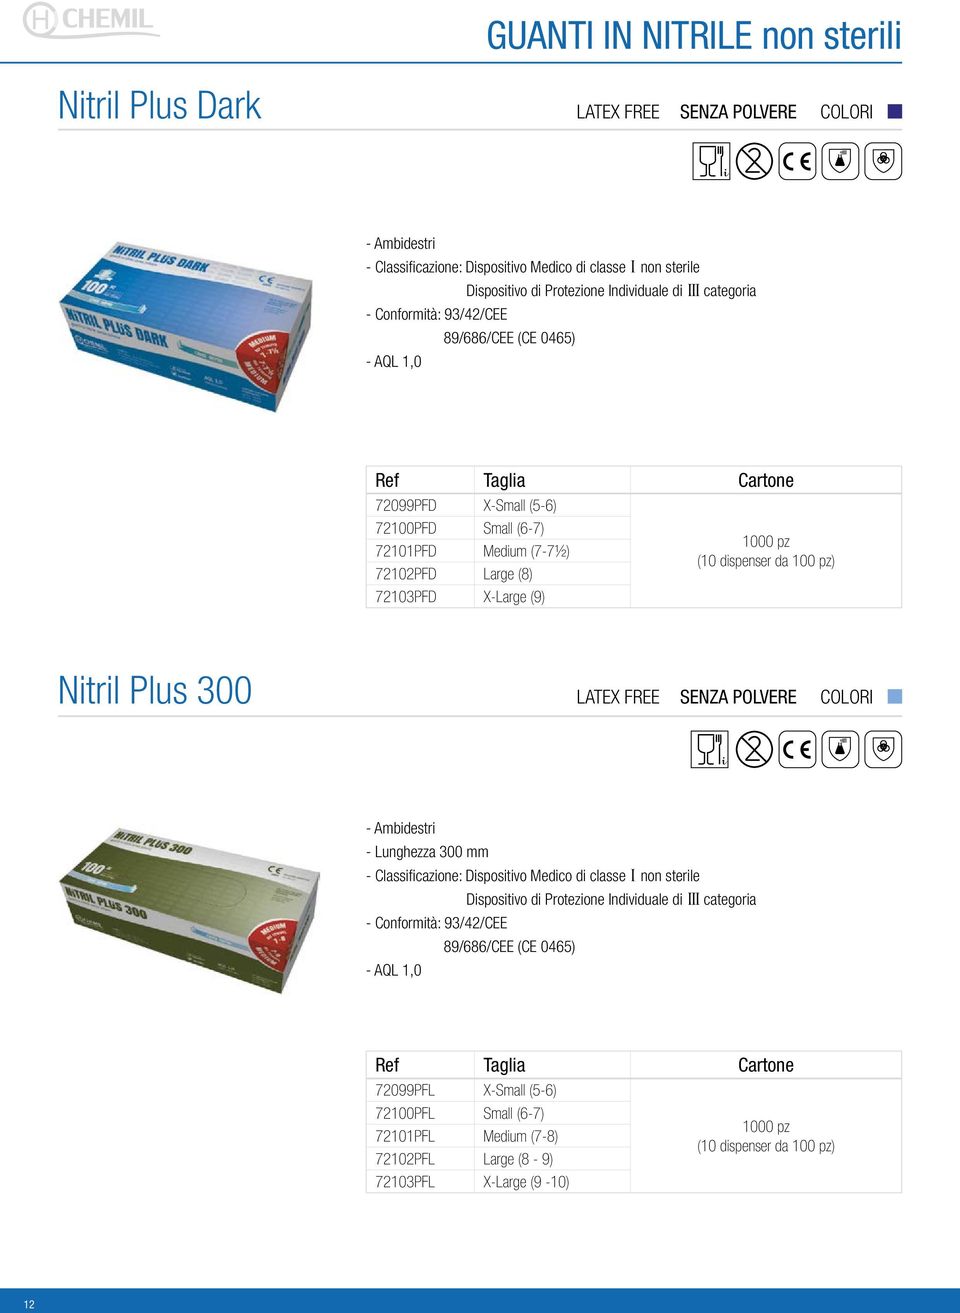 pz) Nitril Plus 300 LATEX FREE - Lunghezza 300 mm Dispositivo di Protezione Individuale di III categoria - Conformità: 93/42/CEE 89/686/CEE (CE